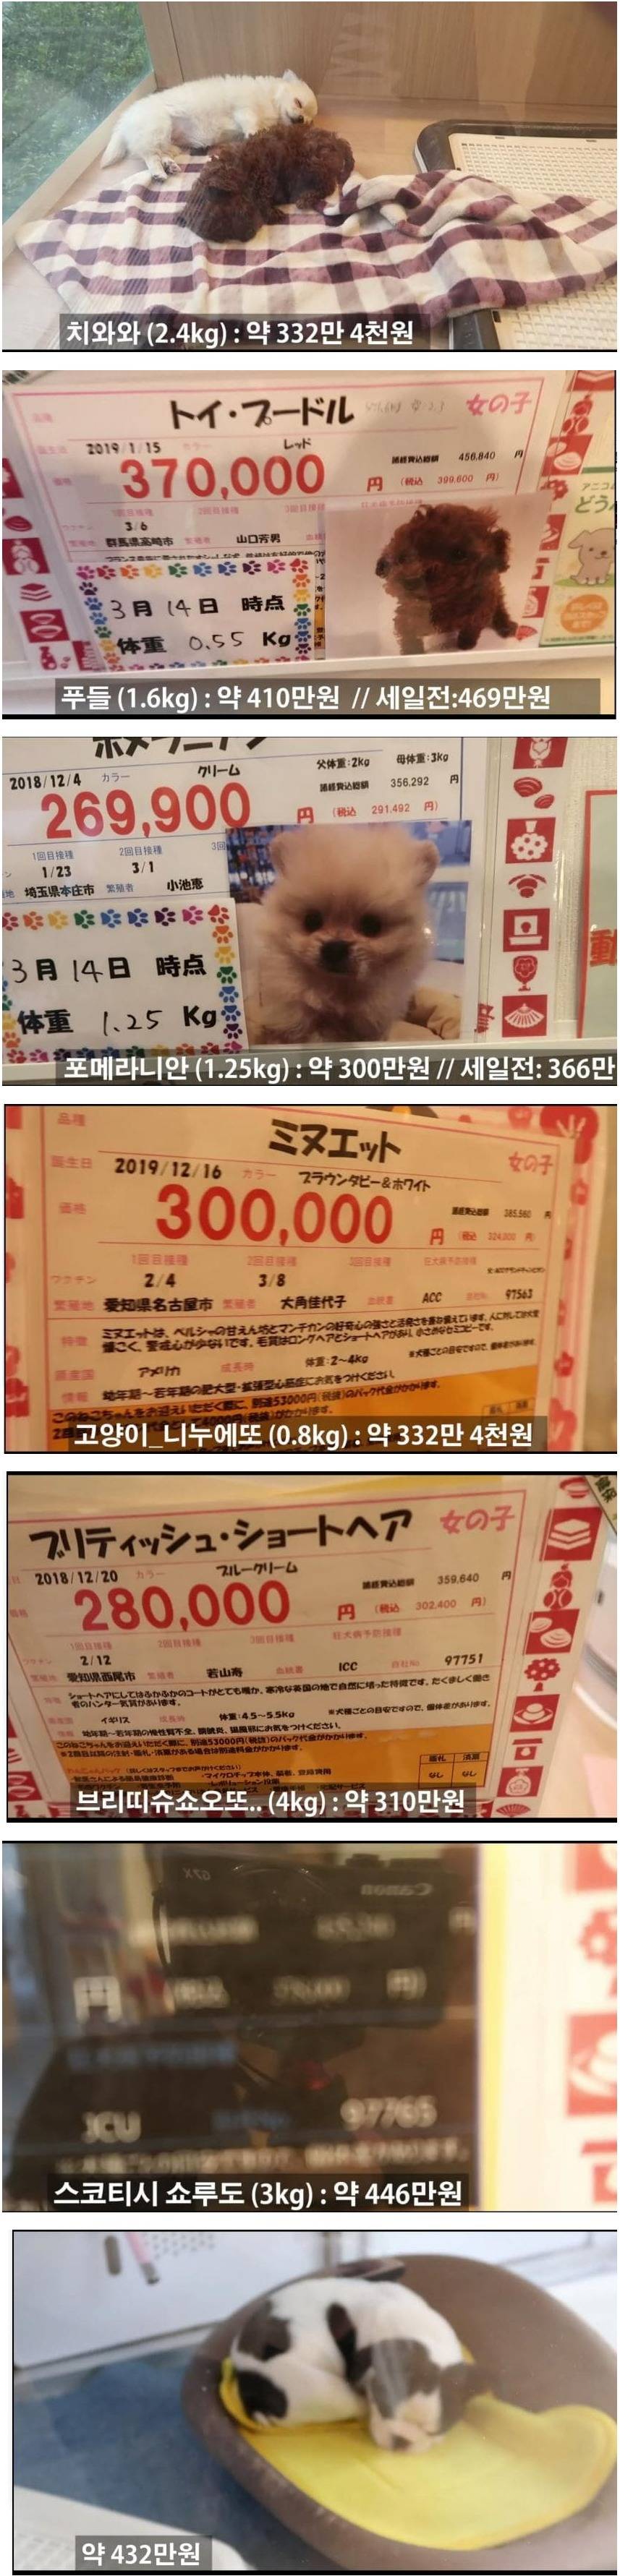 일본 애완동물 가격